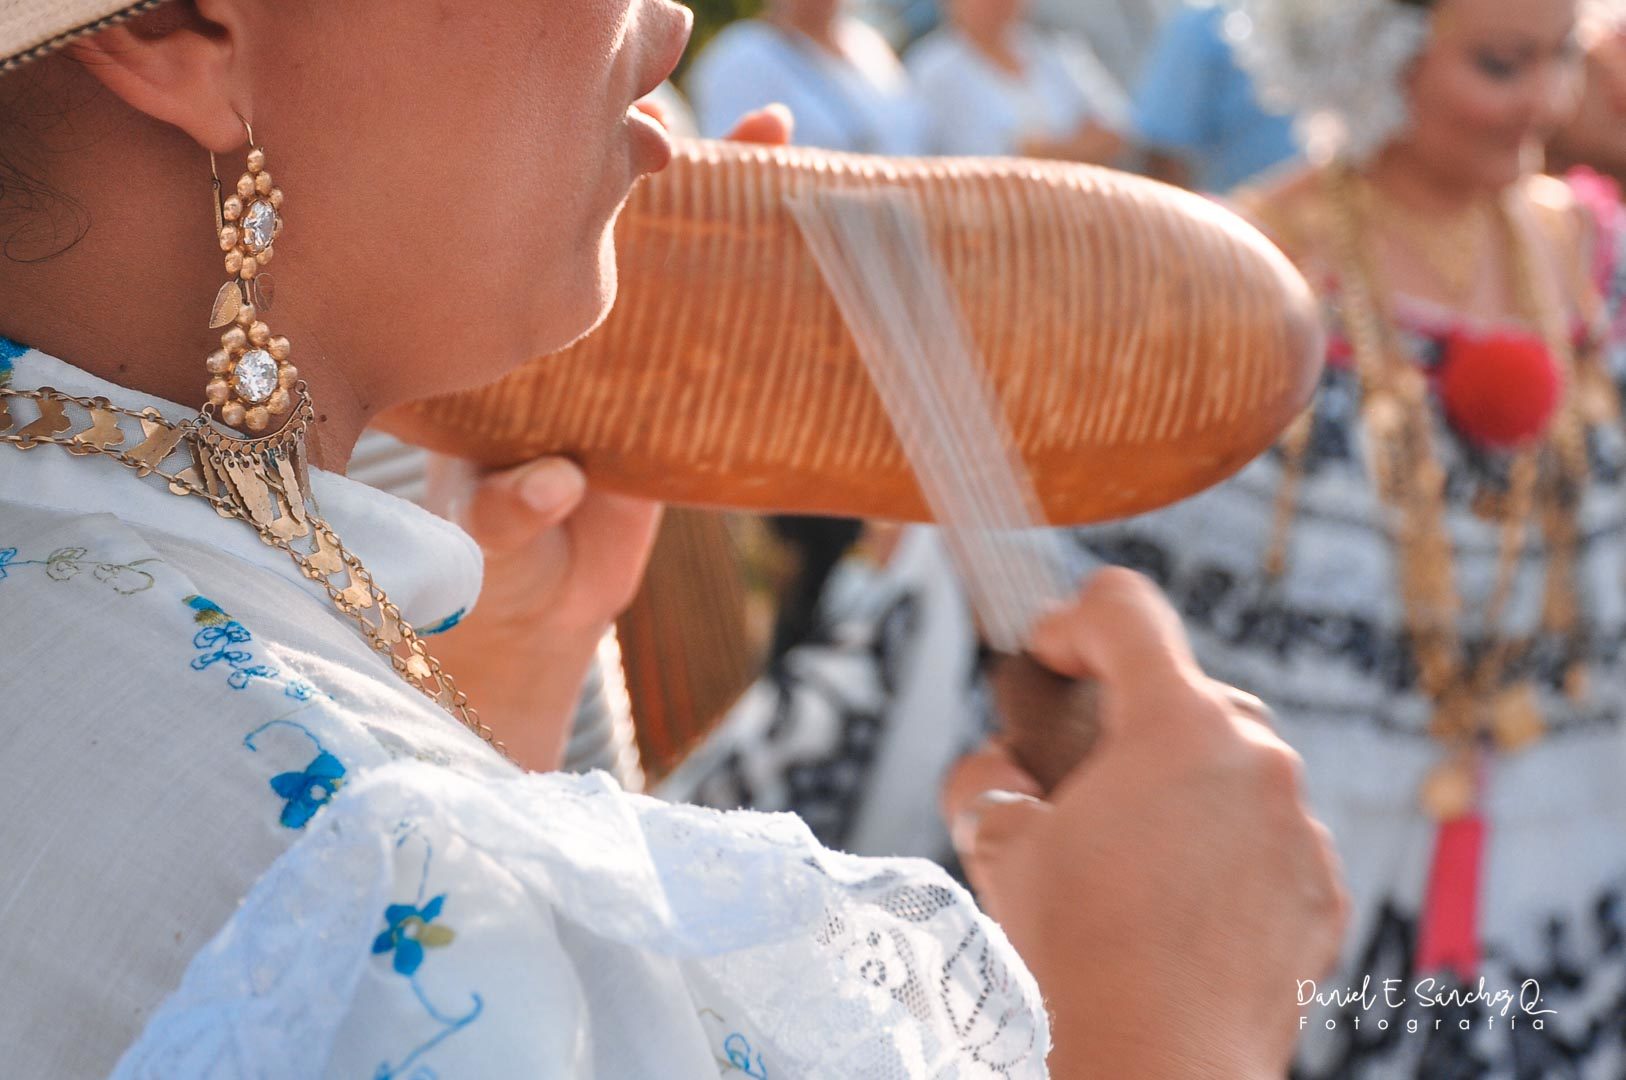 La churuca en la música folclórica de Panamá